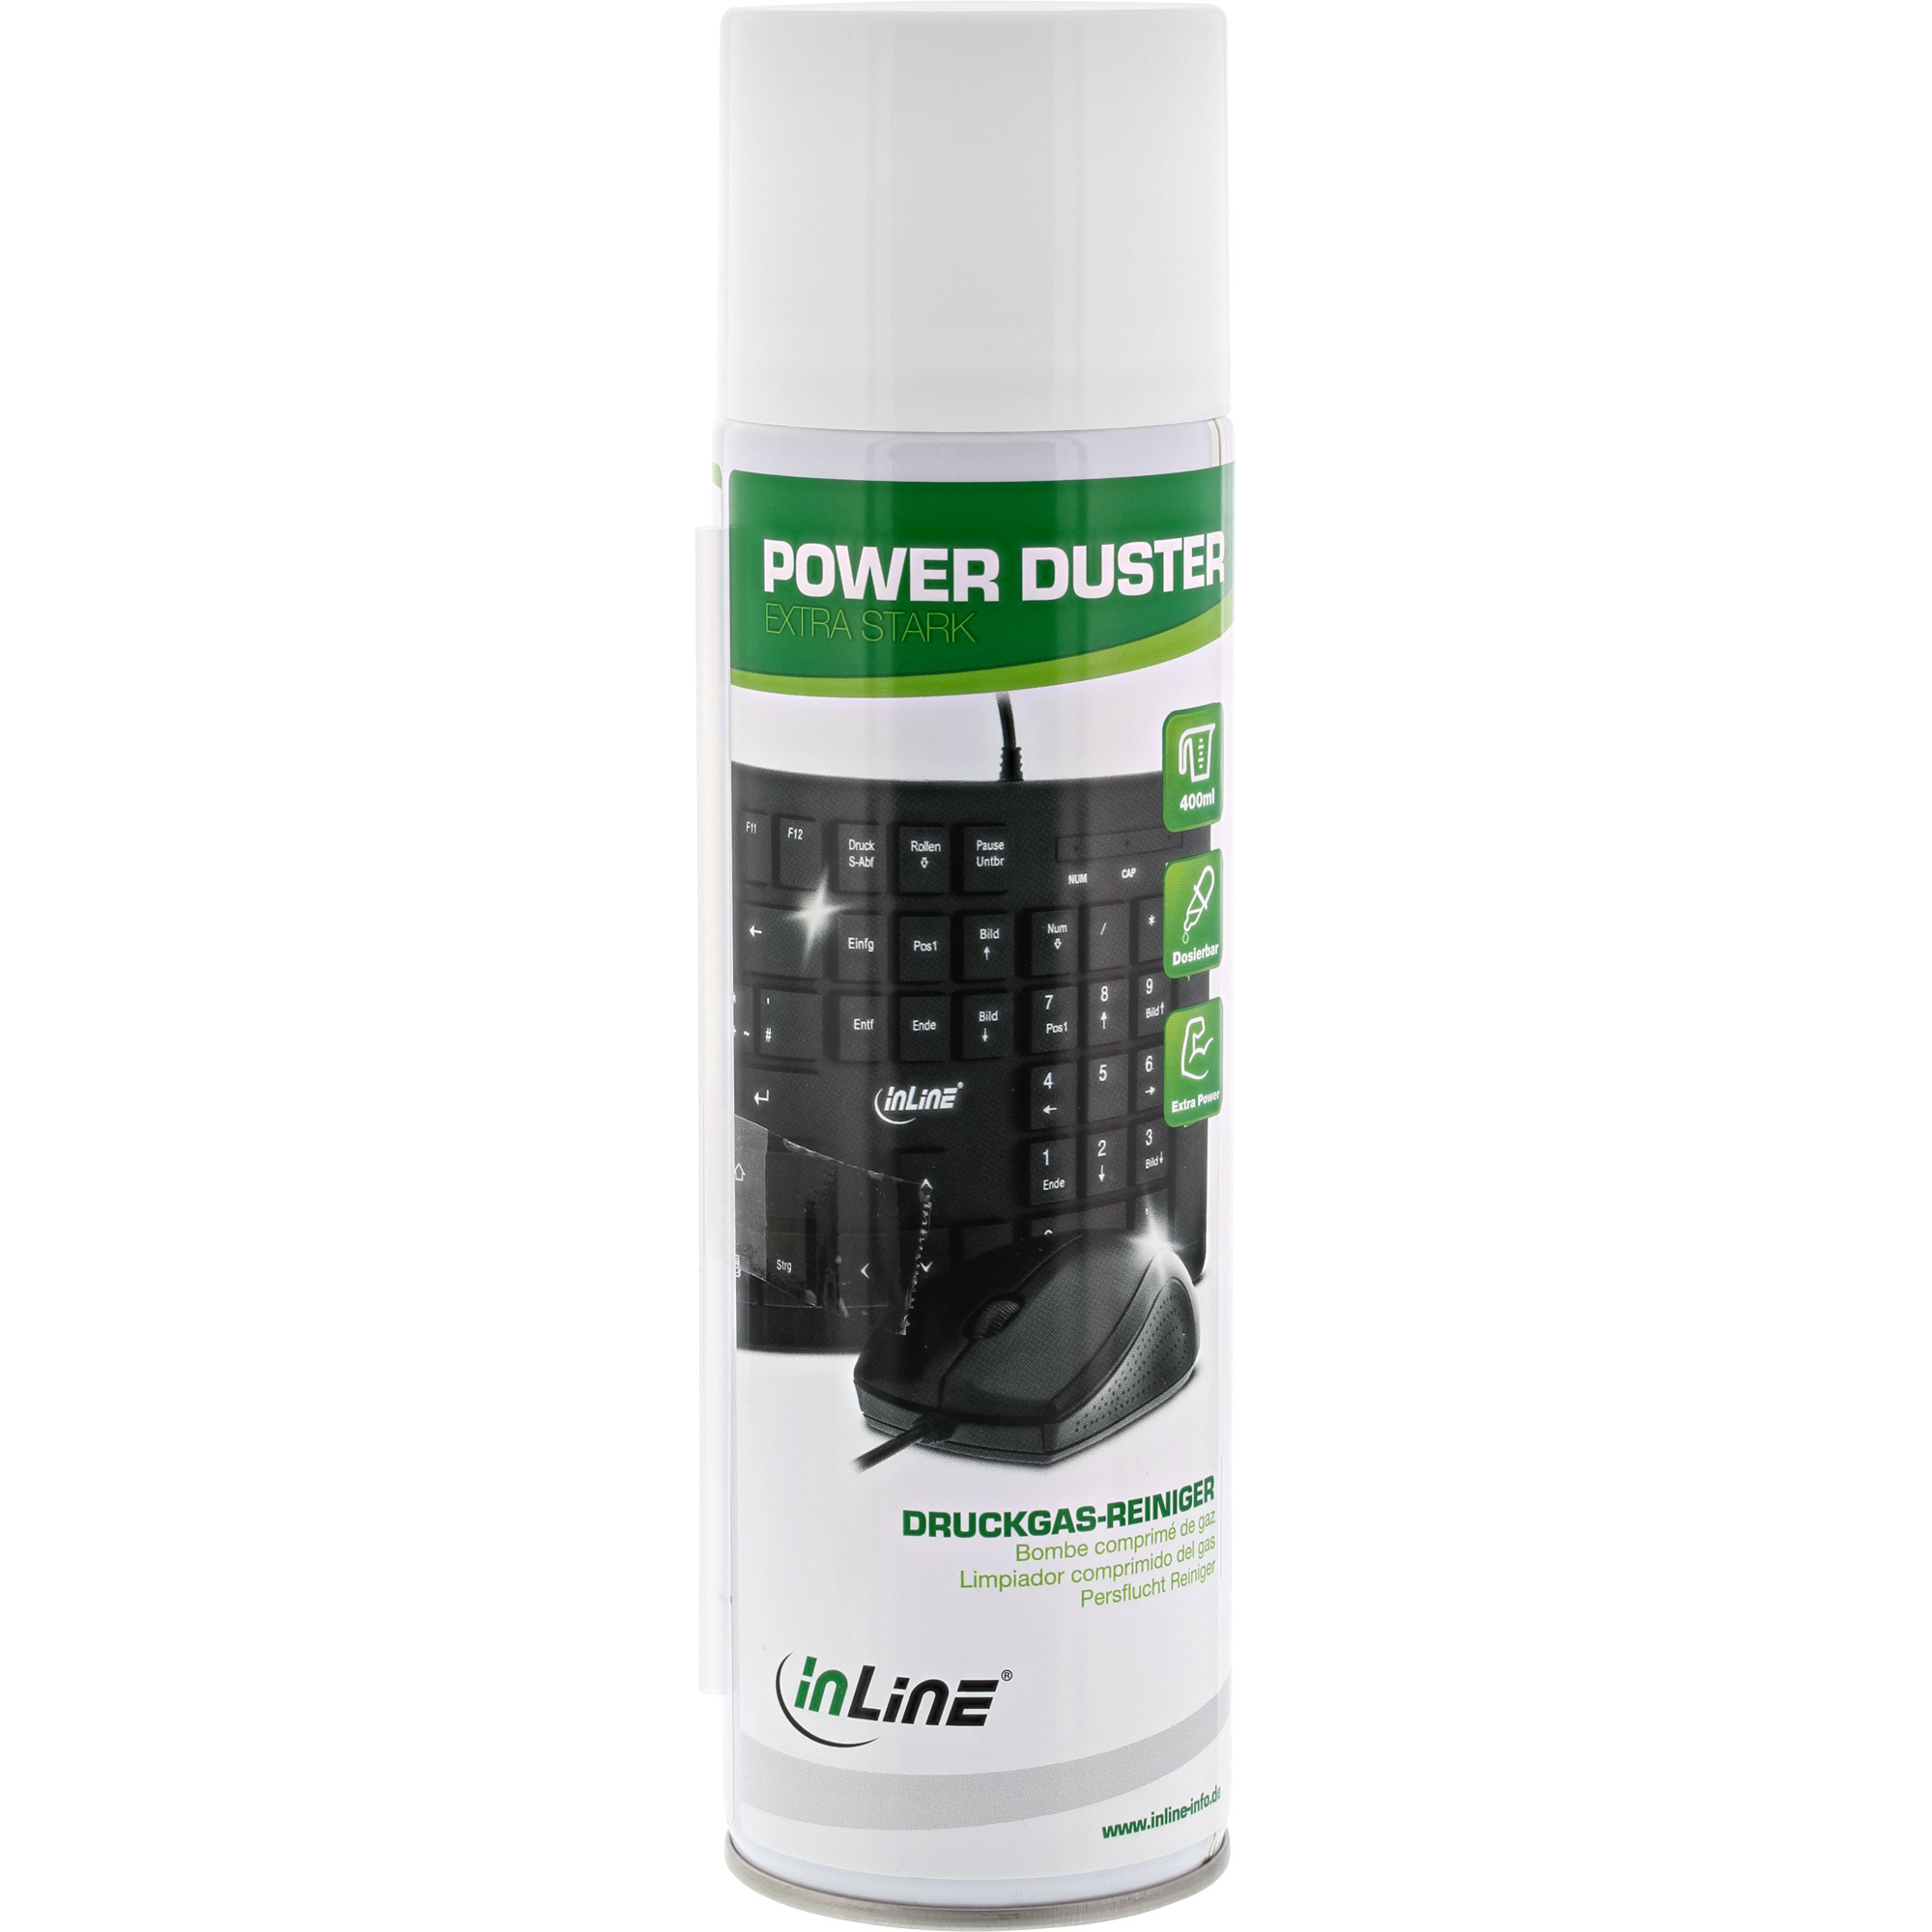 InLine® Power Duster, "extra starker" Druckgas-Reiniger Spraydose 400ml